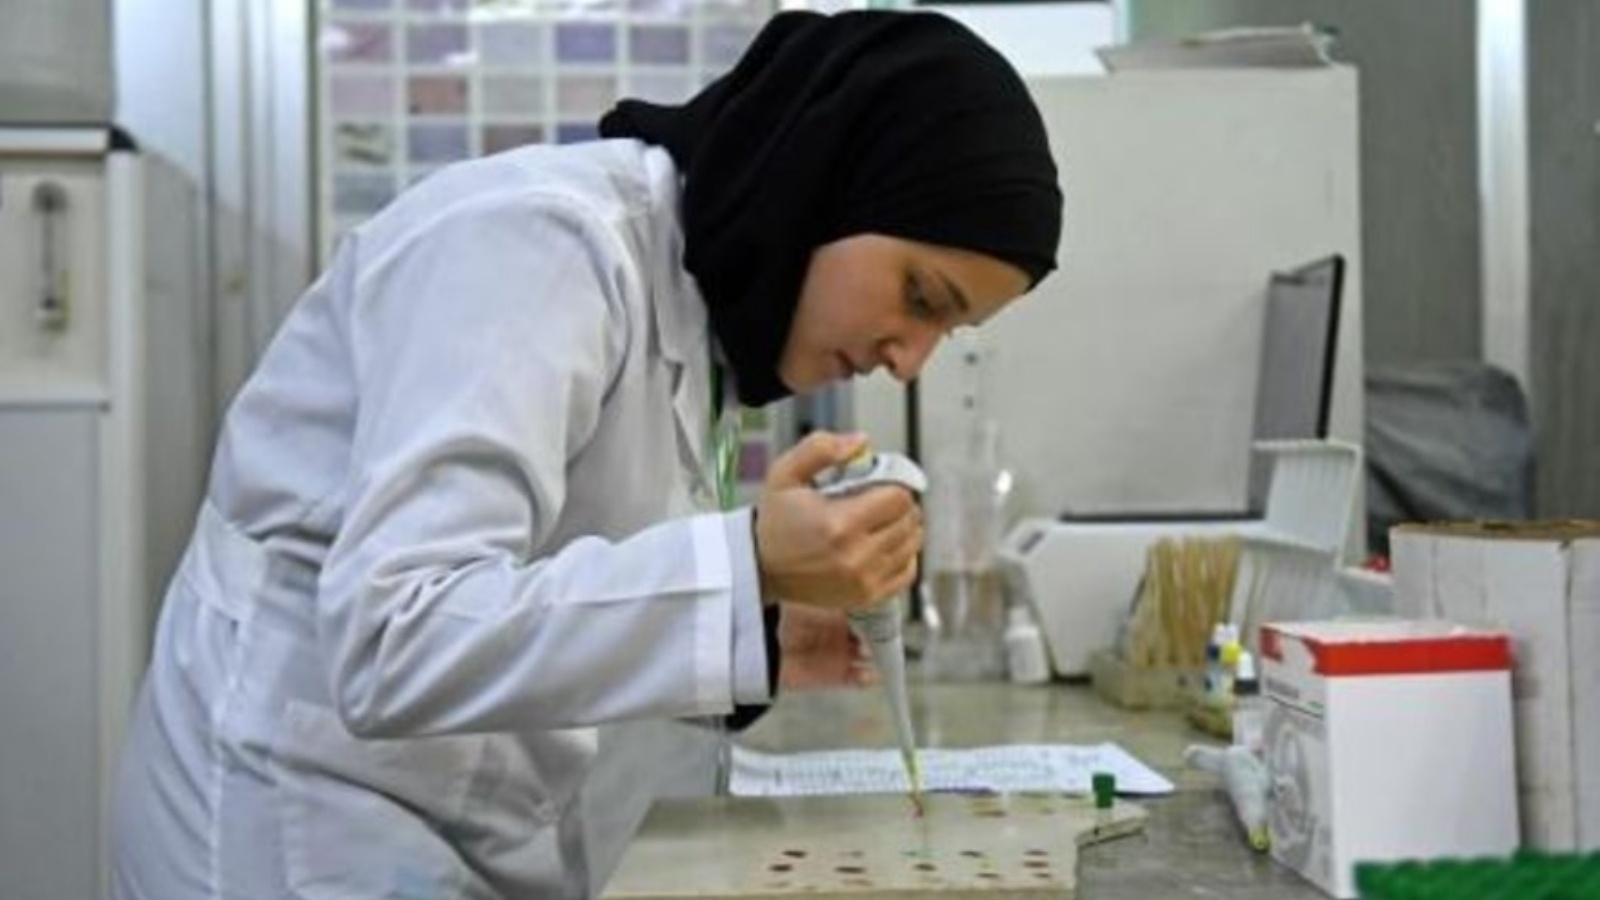 أخصائية مخبرية تعمل على عينات لاختبار الكشف عن الكوليرا داخل مستشفى في 11 سبتمبر 2022 في مدينة حلب في شمال سوريا التي تشهد انتشاراً للمرض للمرة الأولى منذ عام 2009 